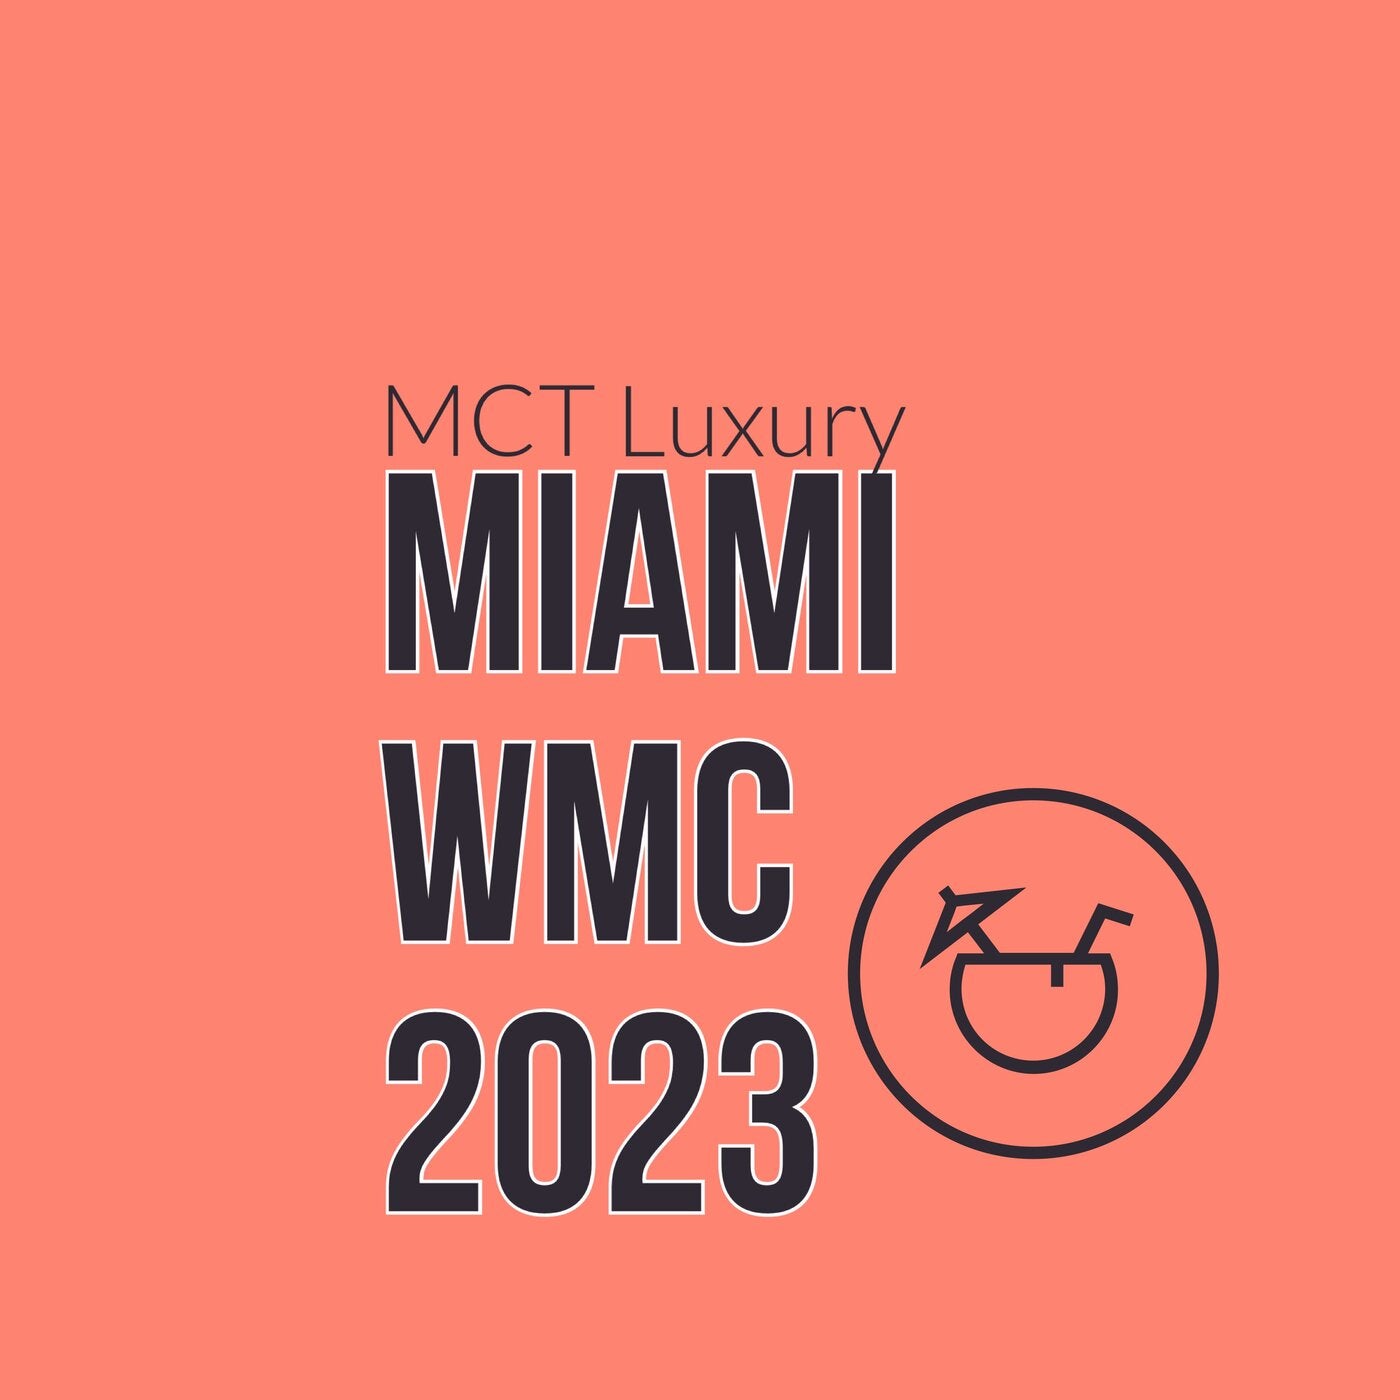 MIAMI WMC 2023